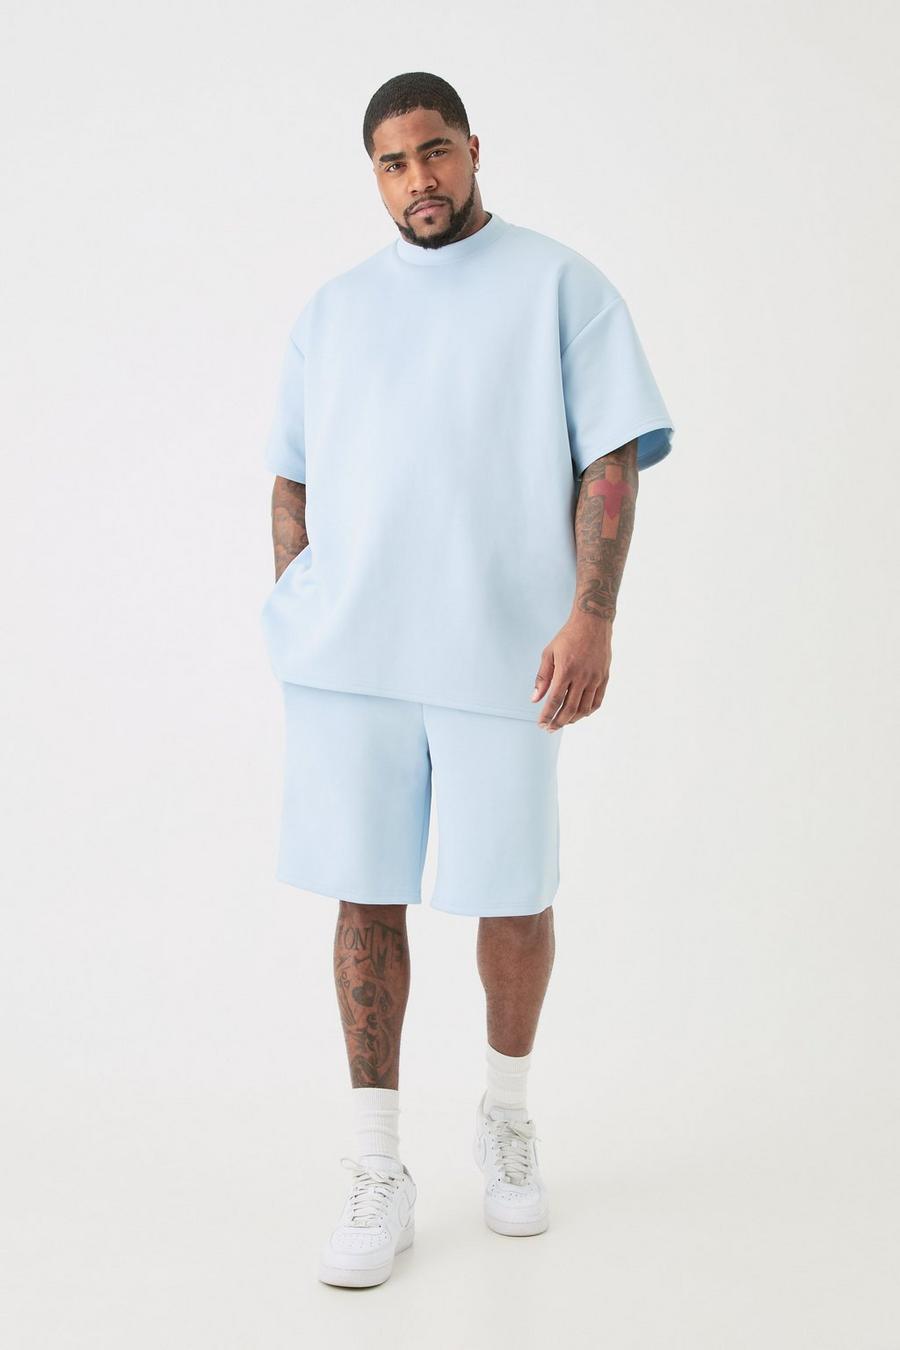 Pastel blue Plus Oversized Scuba T-Shirt En Baggy Shorts Set